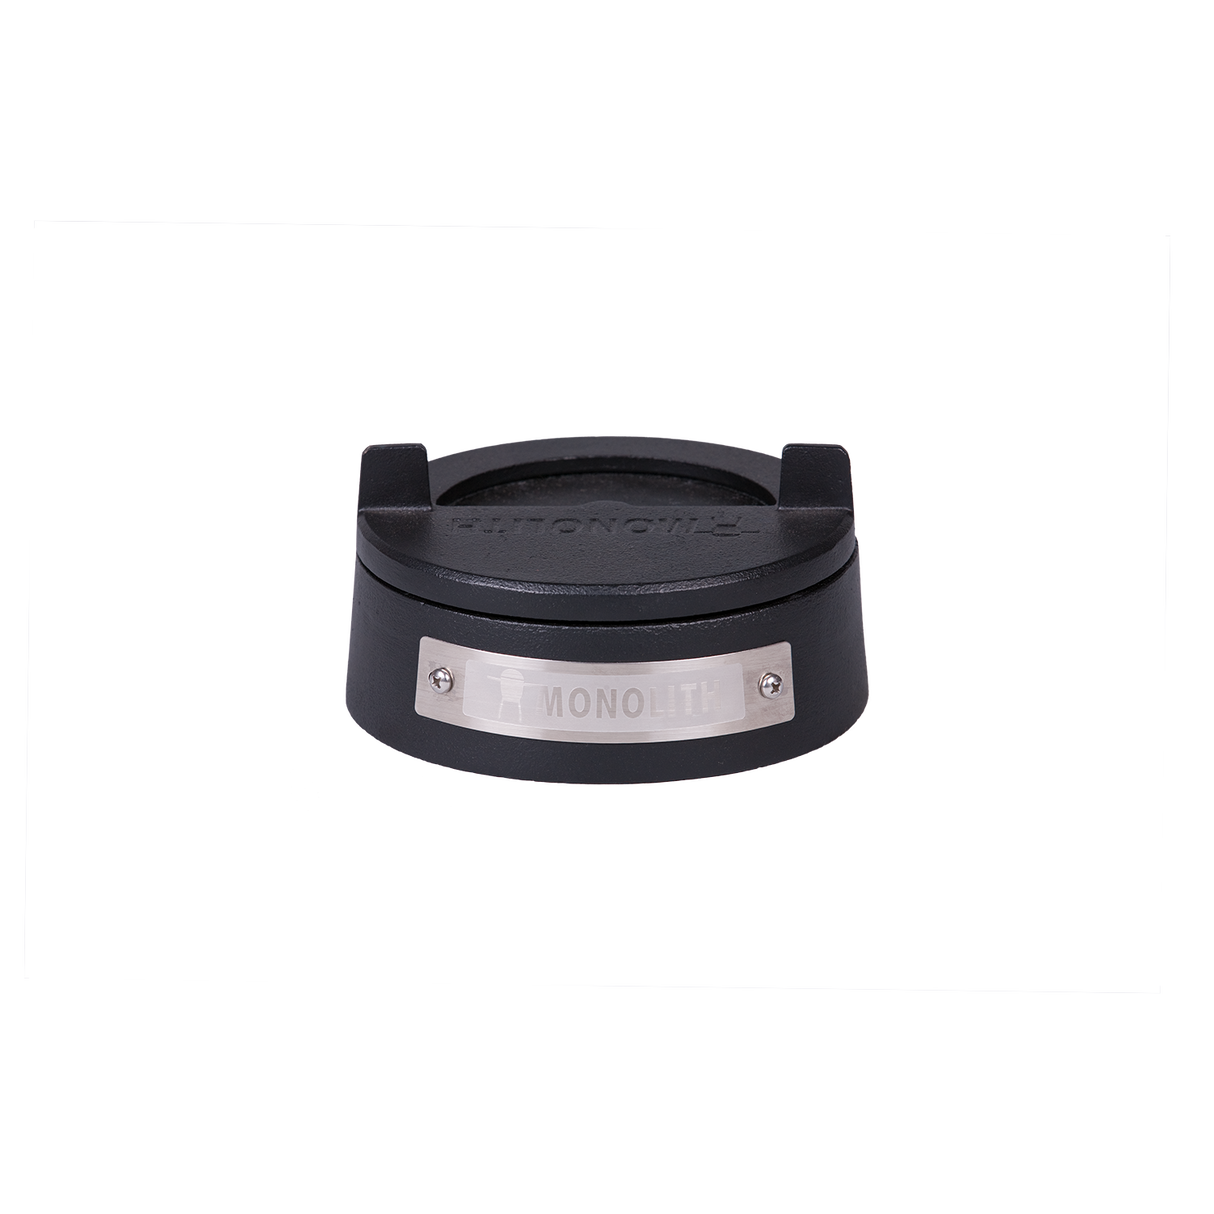 ICON/JUNIOR 2.0 cast iron lid